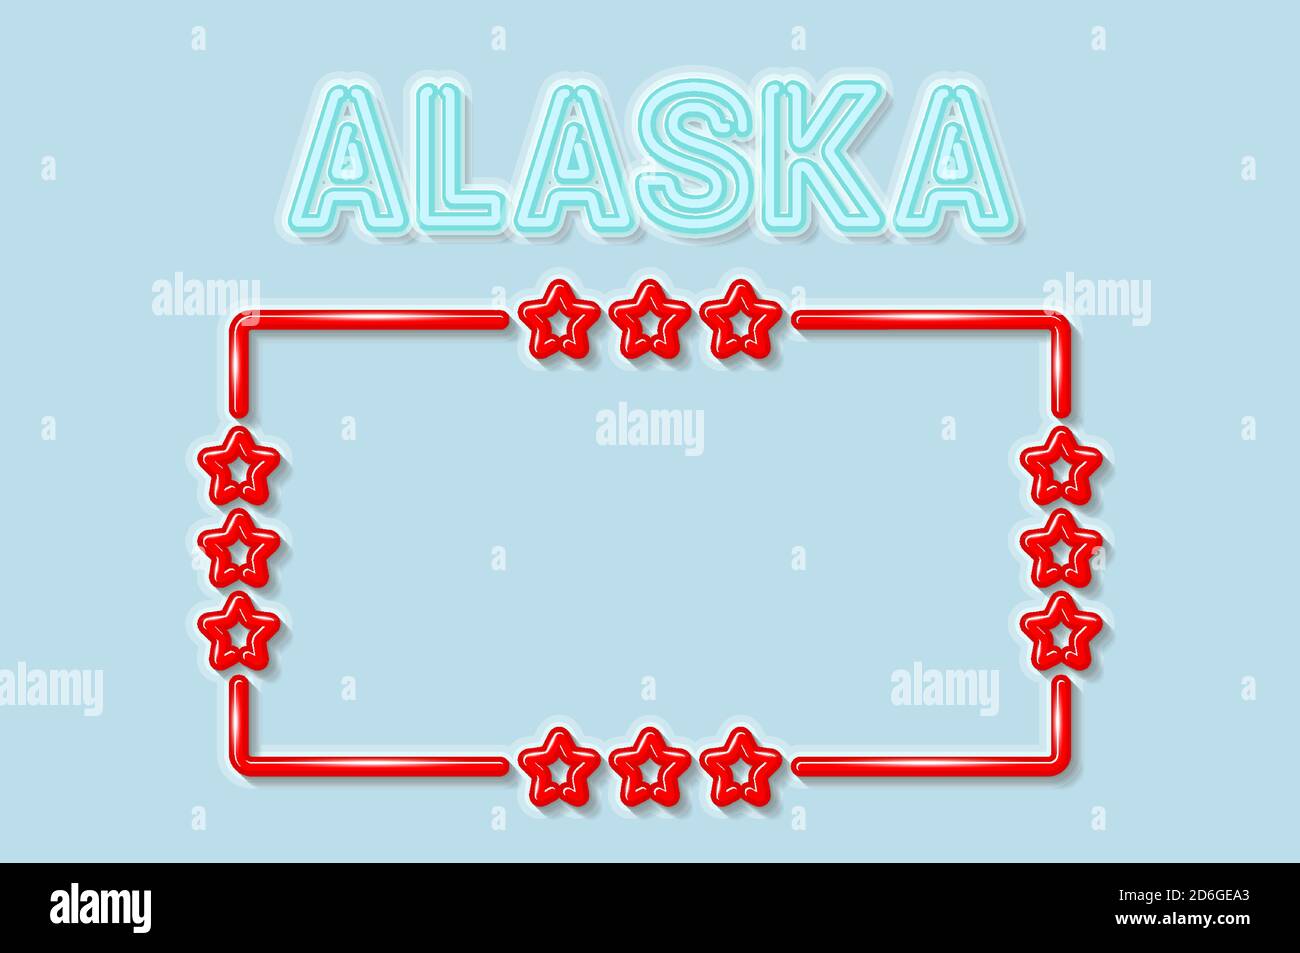 Alaska US-Staat weichen blauen Neonbuchstaben leuchtet aus. Glänzend roter Rahmen mit Sternen. Vektorgrafik Stock Vektor